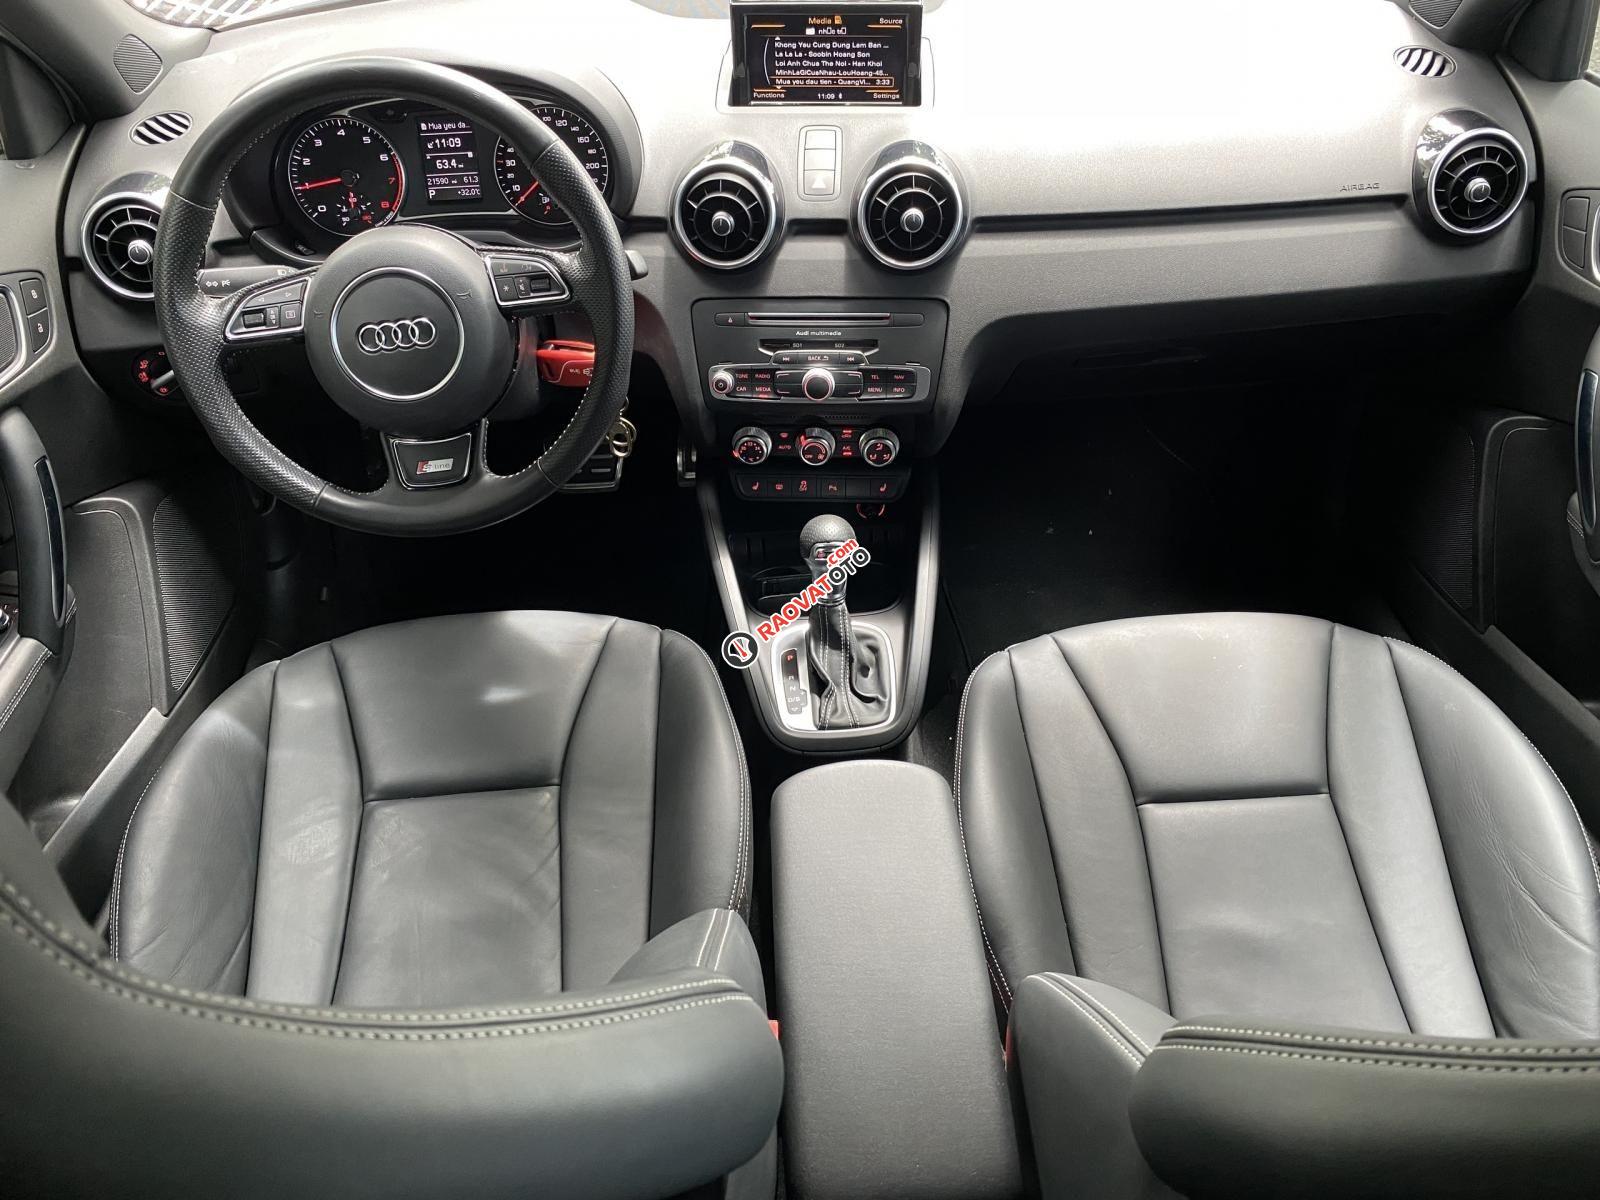 Bán xe Audi A1 bản Sline năm 2015, siêu lướt 21.000km nội thất đen zin nguyên bản, option miên man-2